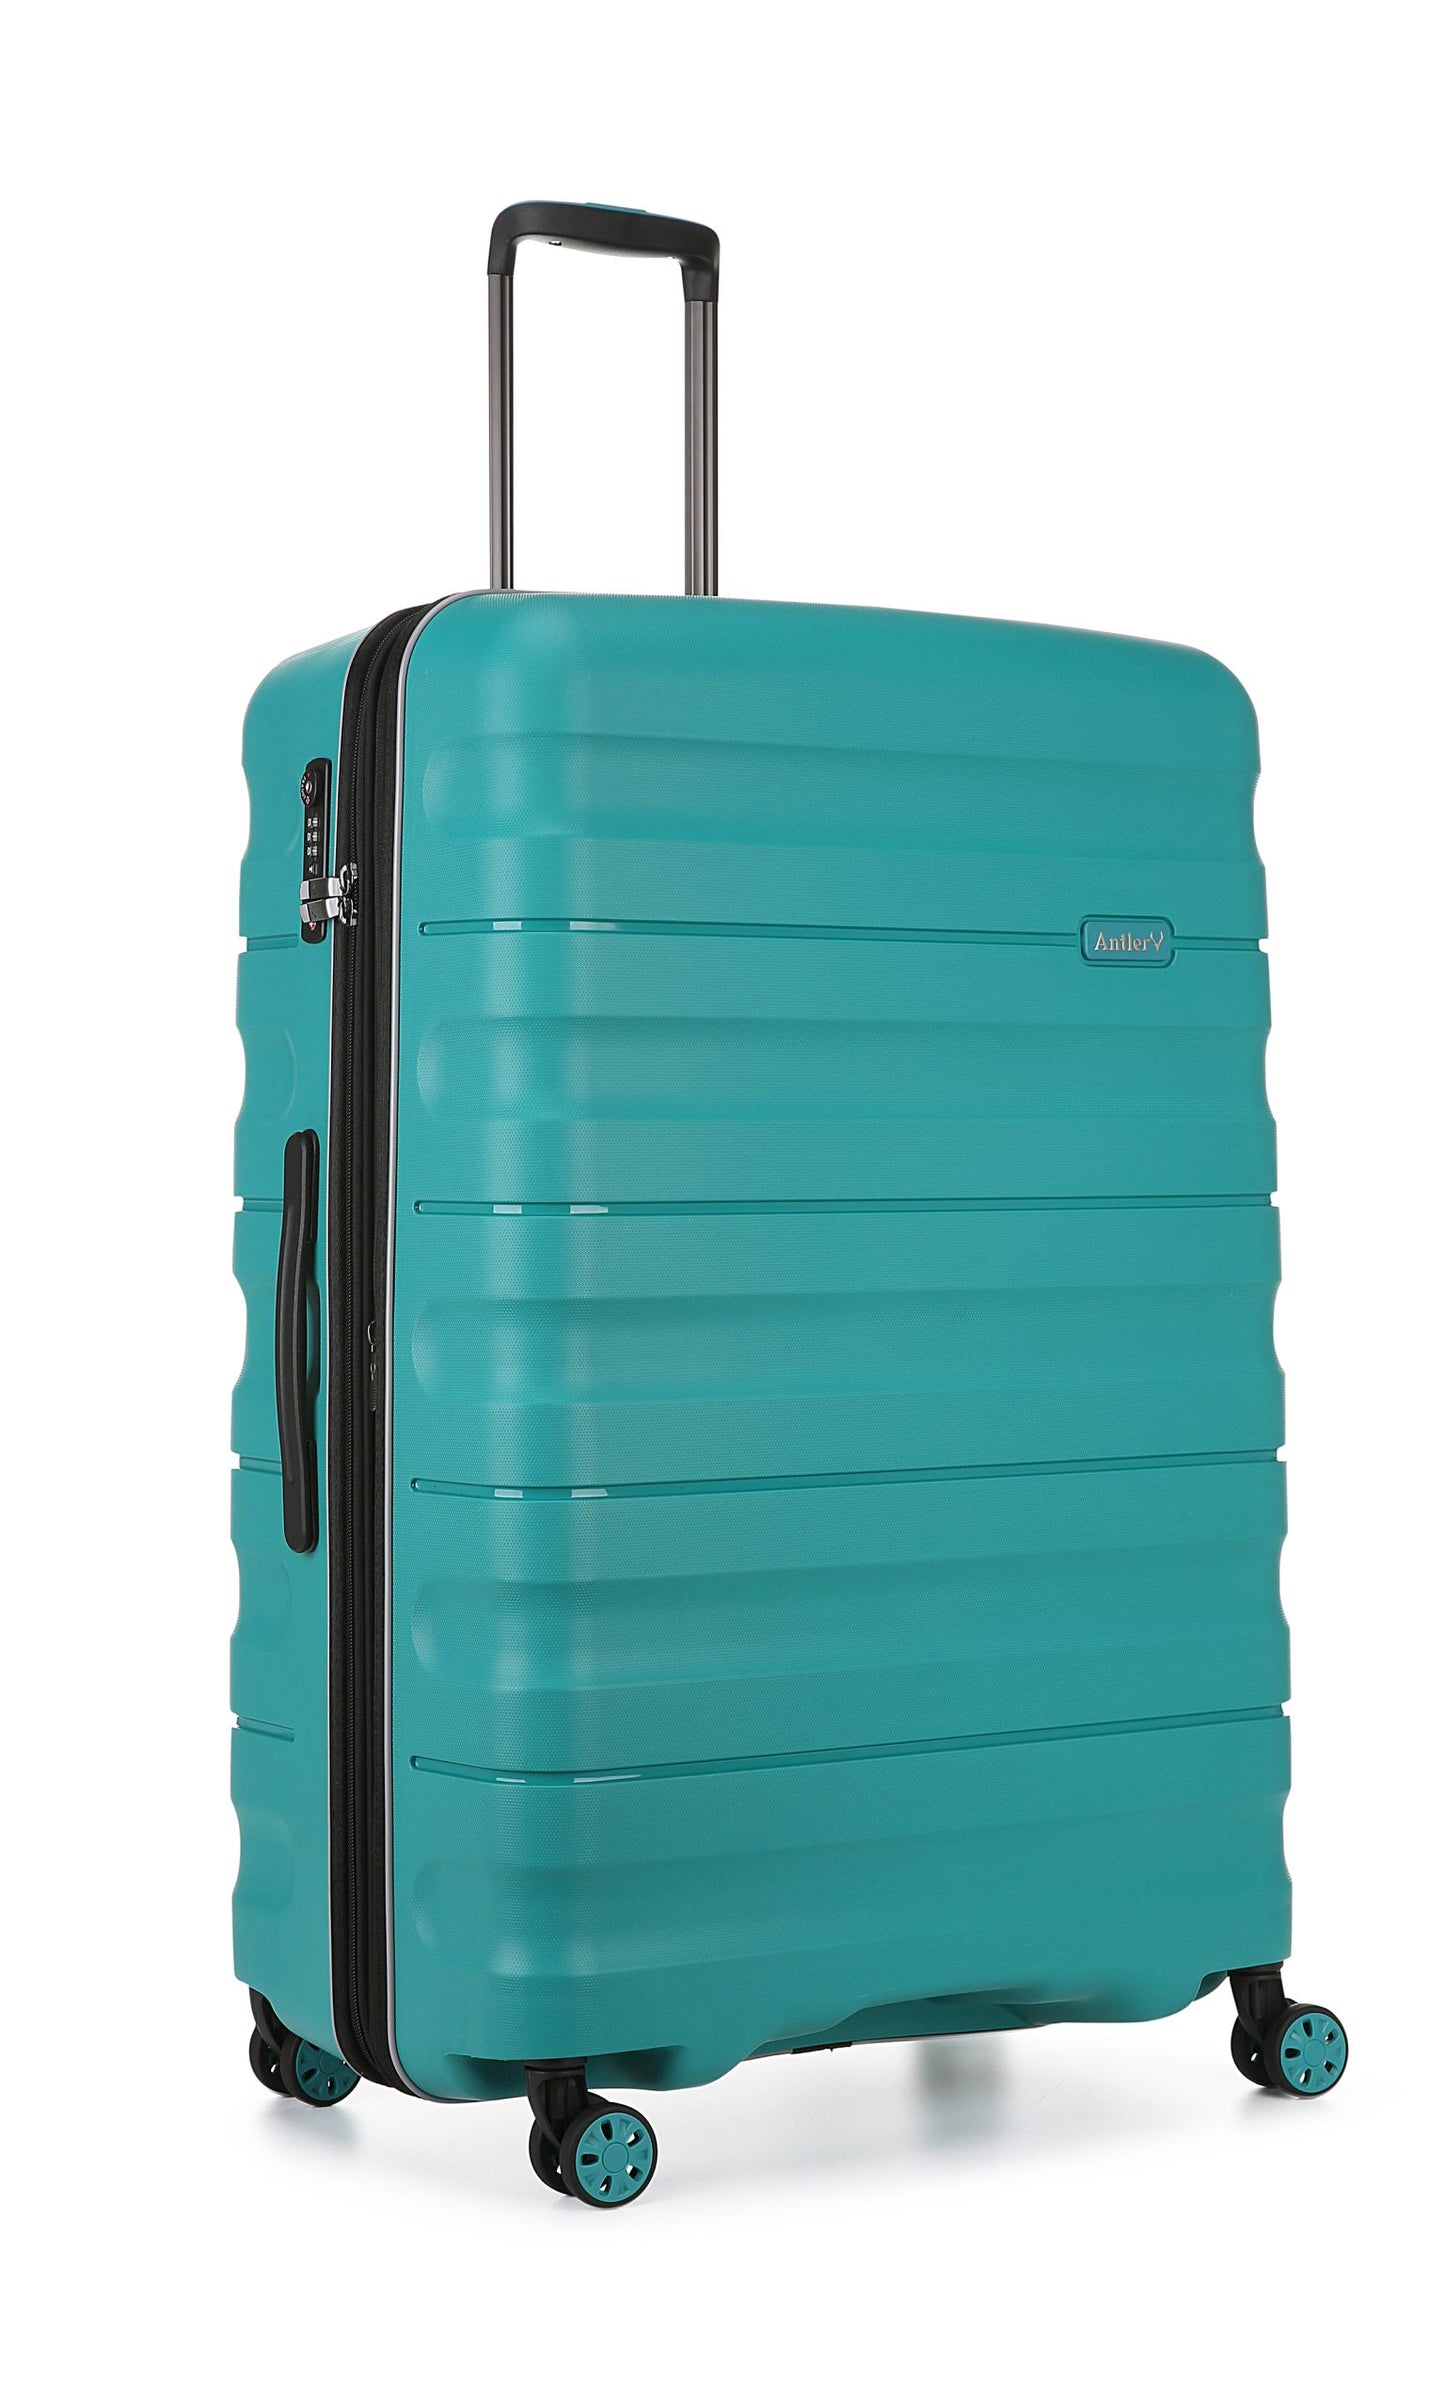 Antler - Lincoln Large 80cm Hardside 4 Wheel Suitcase - Teal